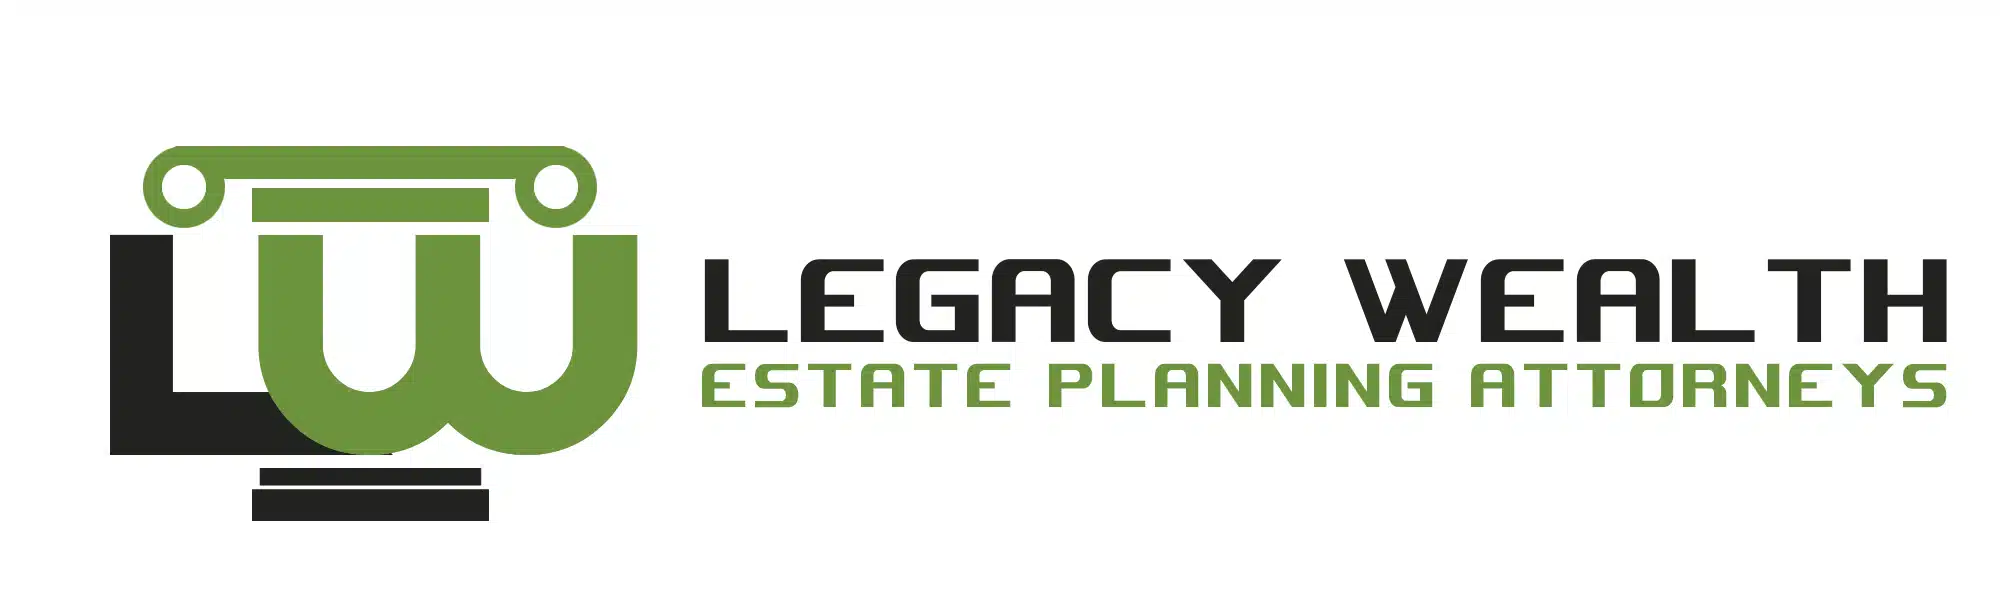 Legacy-Wealth-11.webp